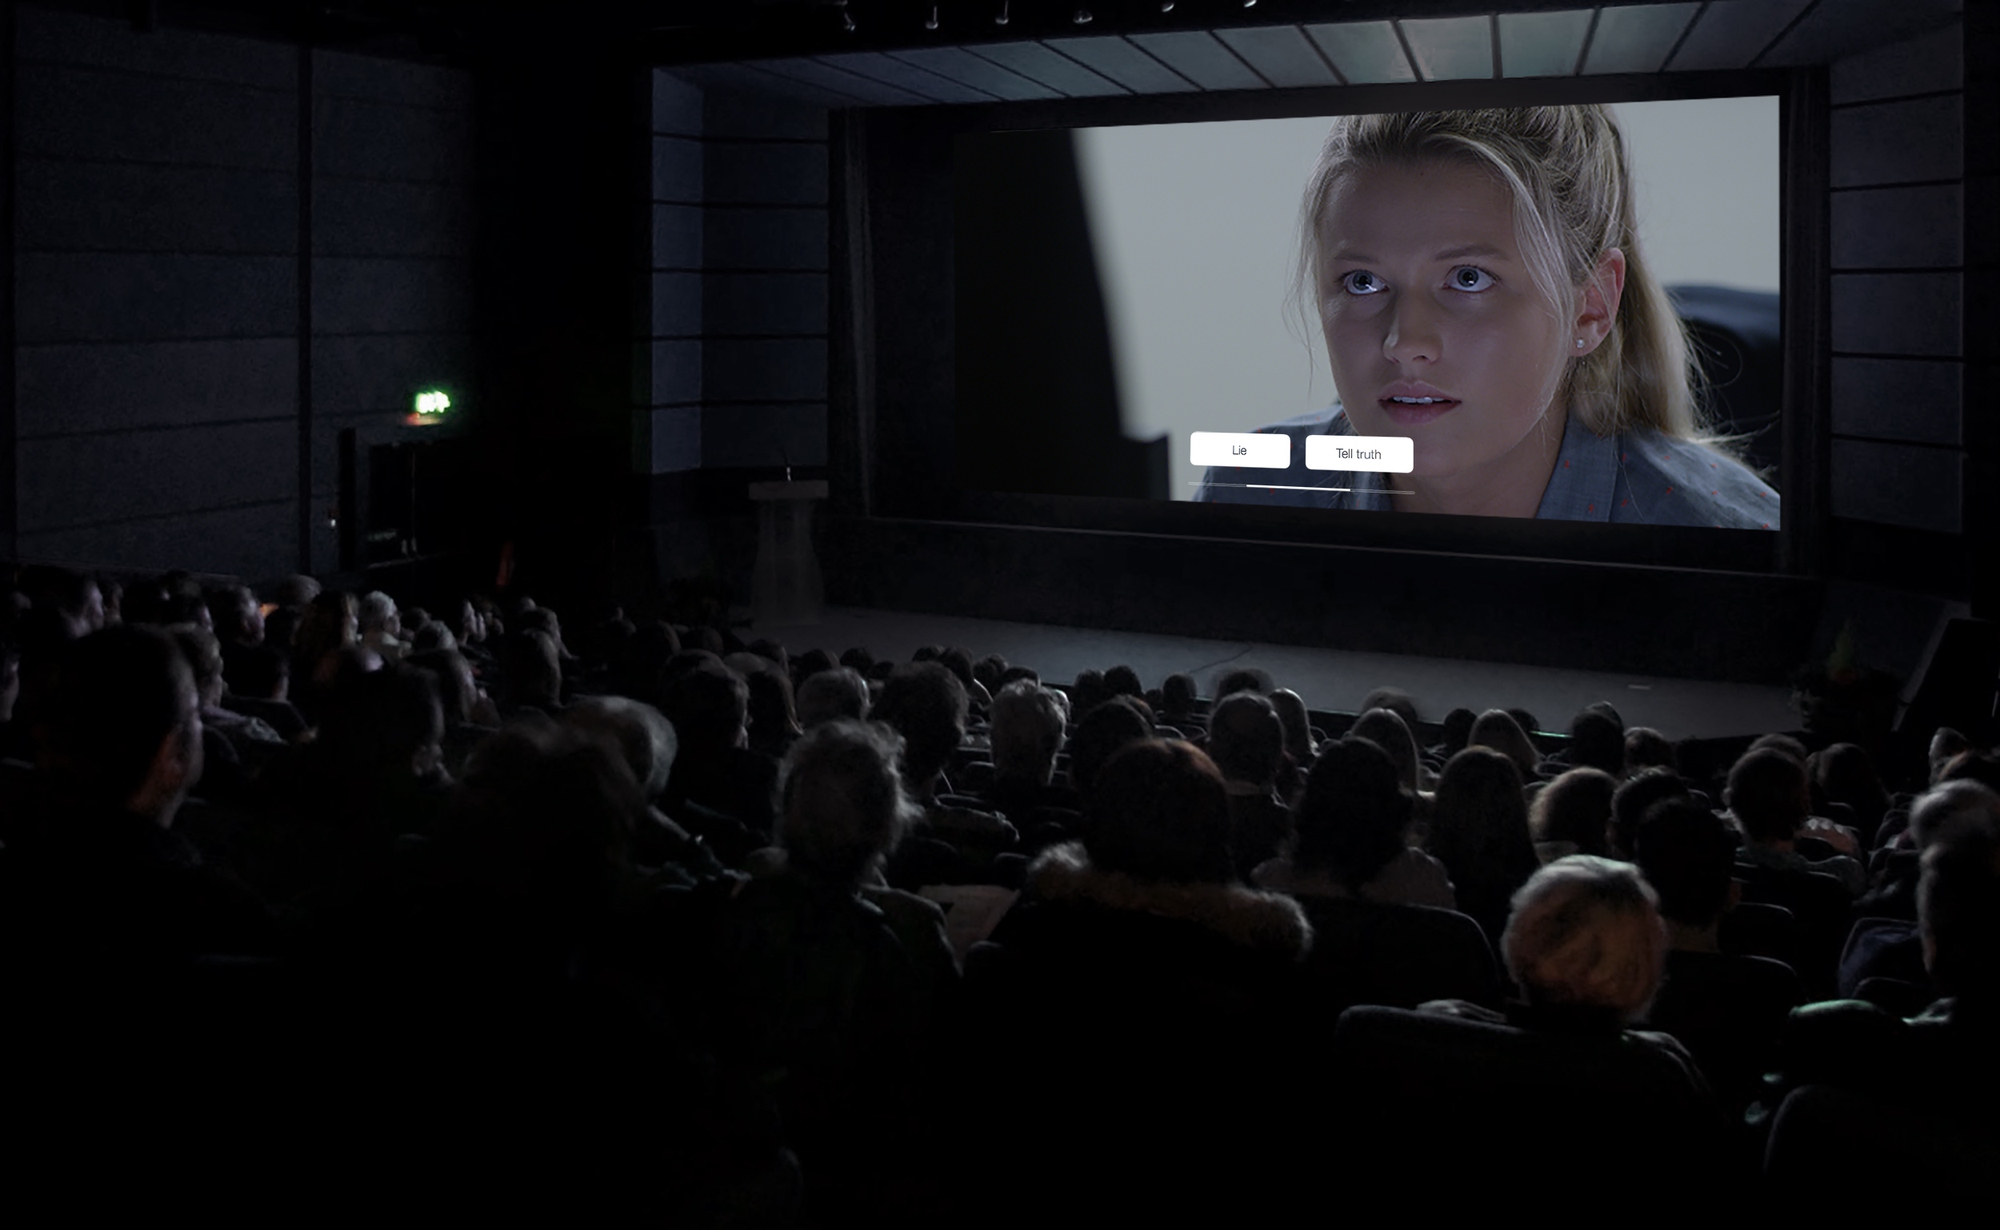 Xem phim tương tác “Phi vụ nửa đêm”, khán giả tự quyết định cái kết - Ảnh 2.